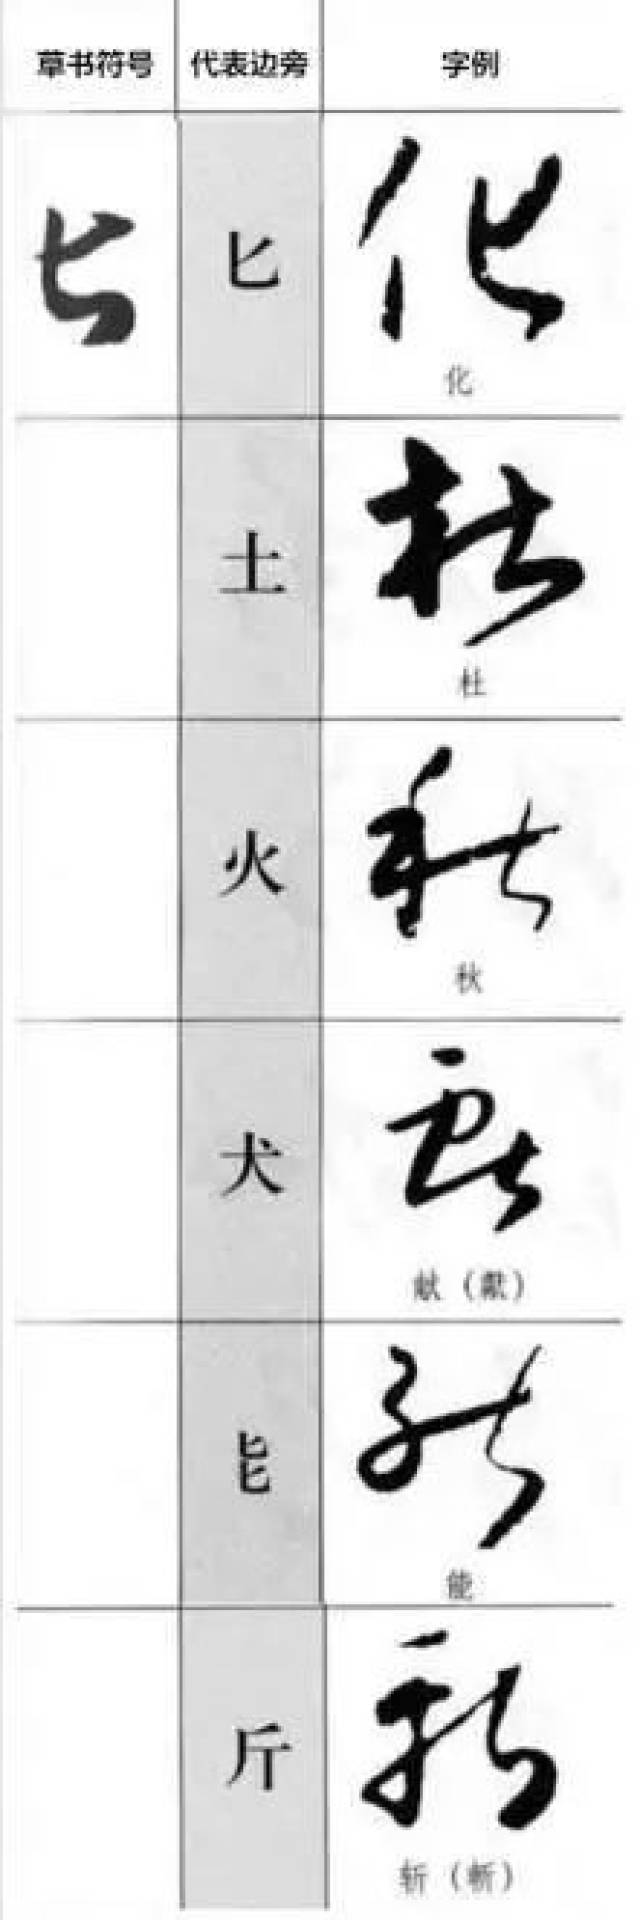 用日本人平假名的方法学草书,先记住最实用的草书符号